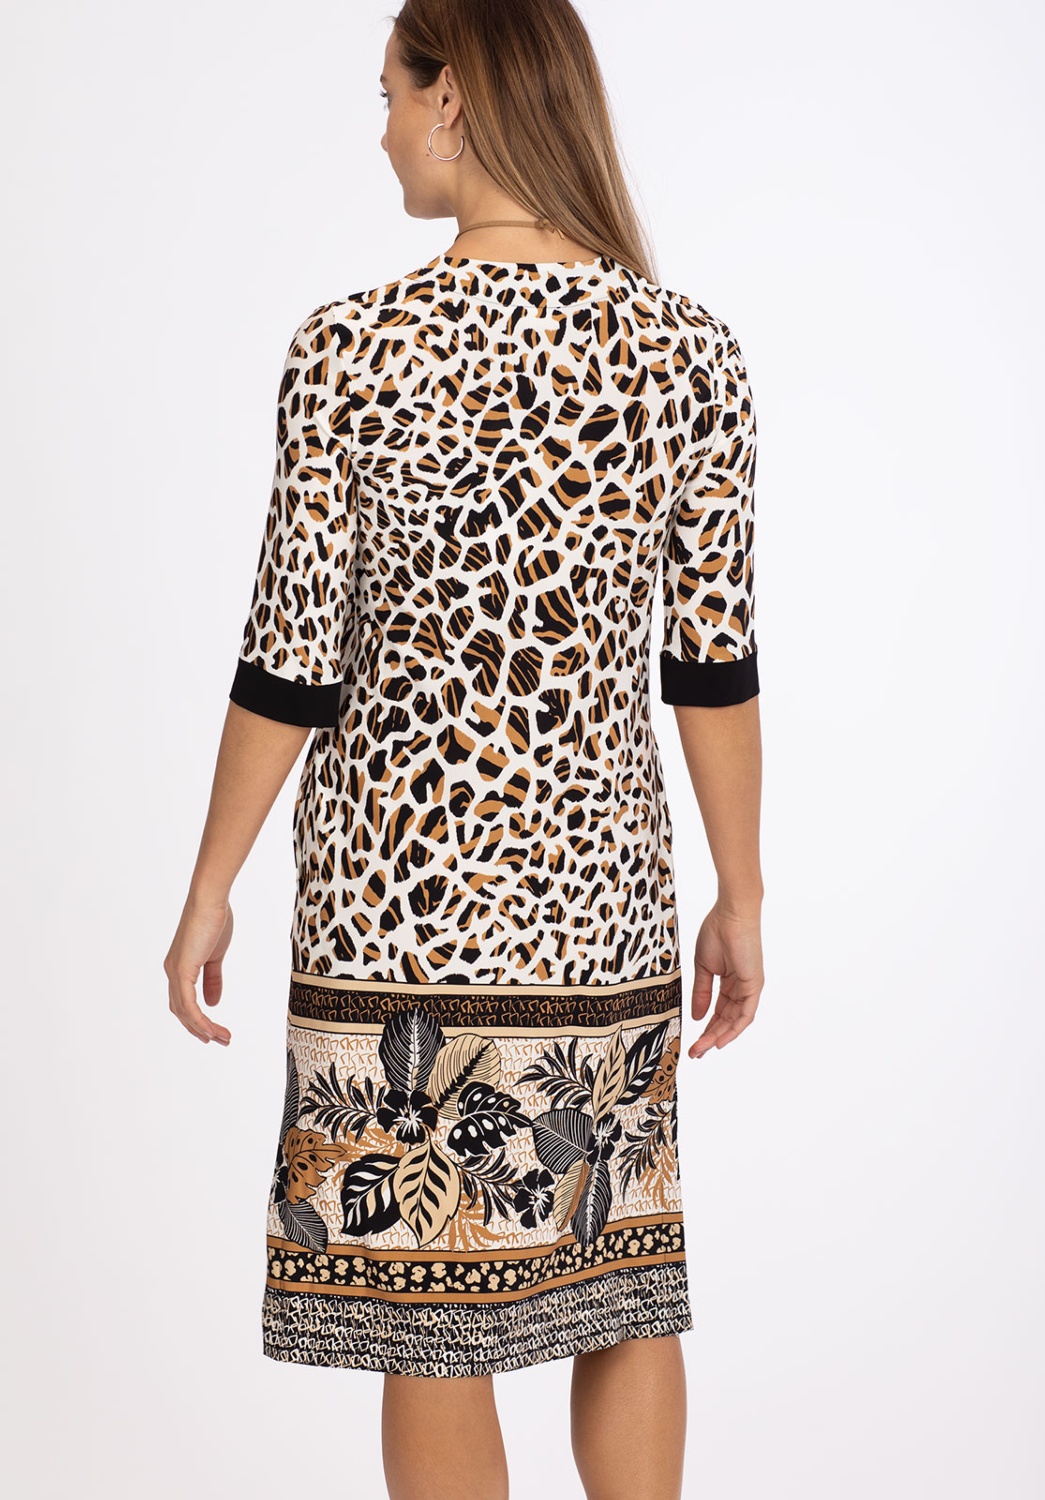 Tropical Animal Print Dress 2